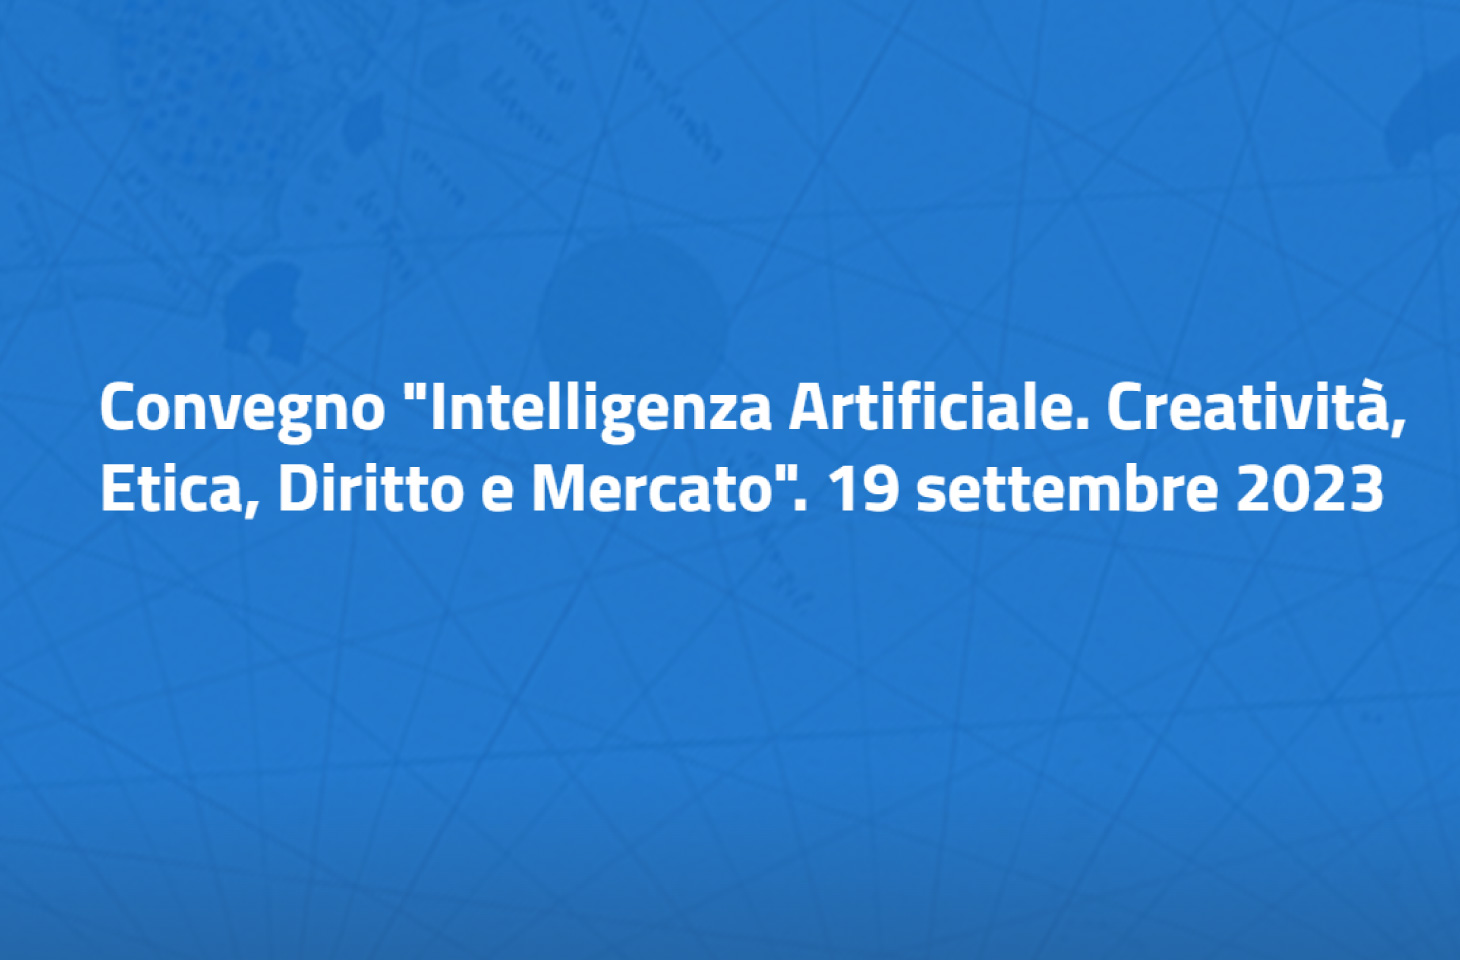 Convegno “Intelligenza Artificiale. Creatività, Etica, Diritto e Mercato”